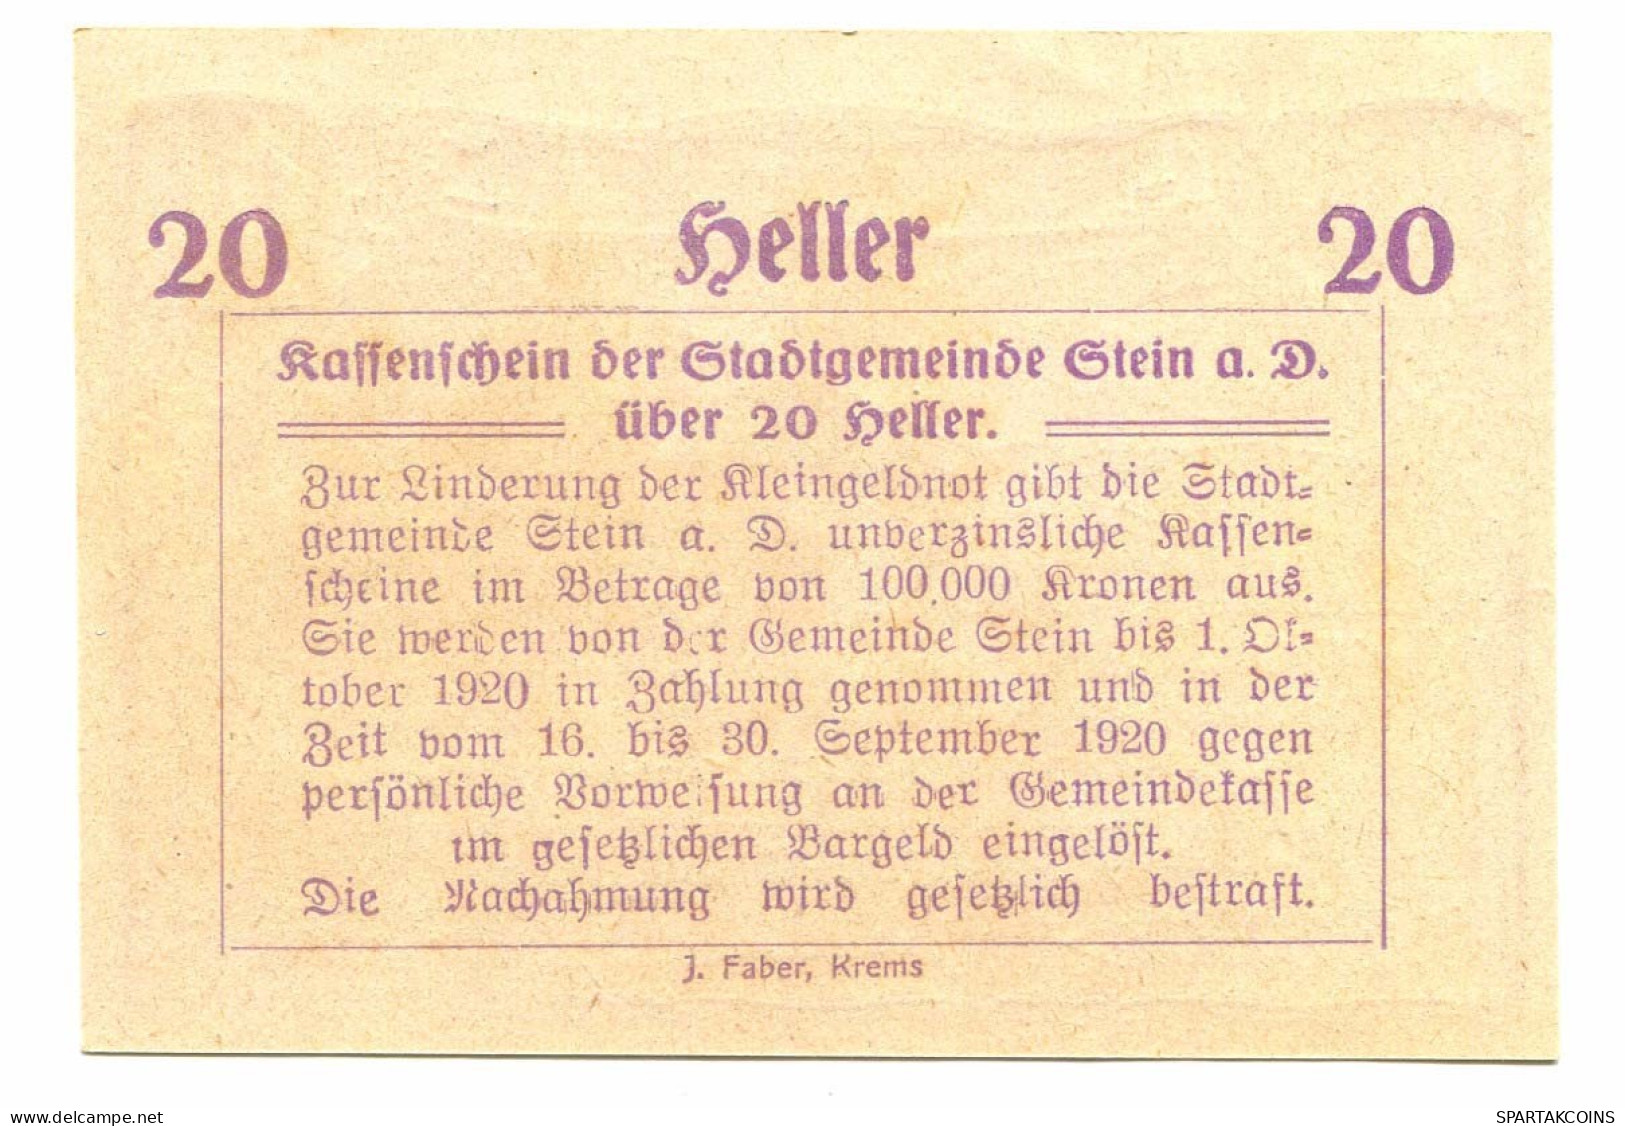 20 Heller 1920 STEIN Österreich UNC Notgeld Papiergeld Banknote #P10323 - [11] Lokale Uitgaven